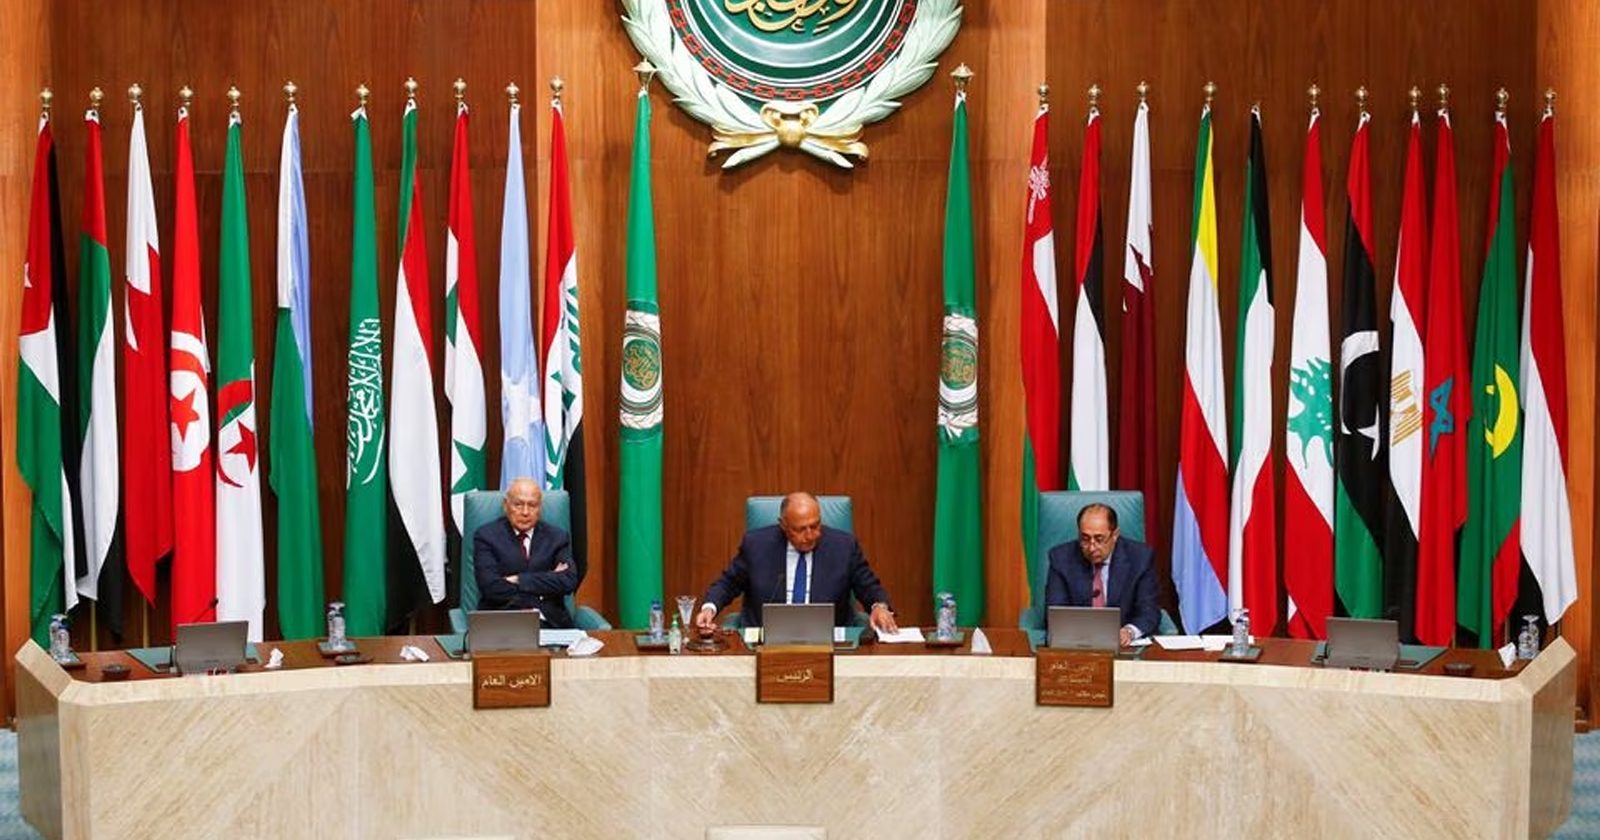 عودة سوريا للجامعة العربية